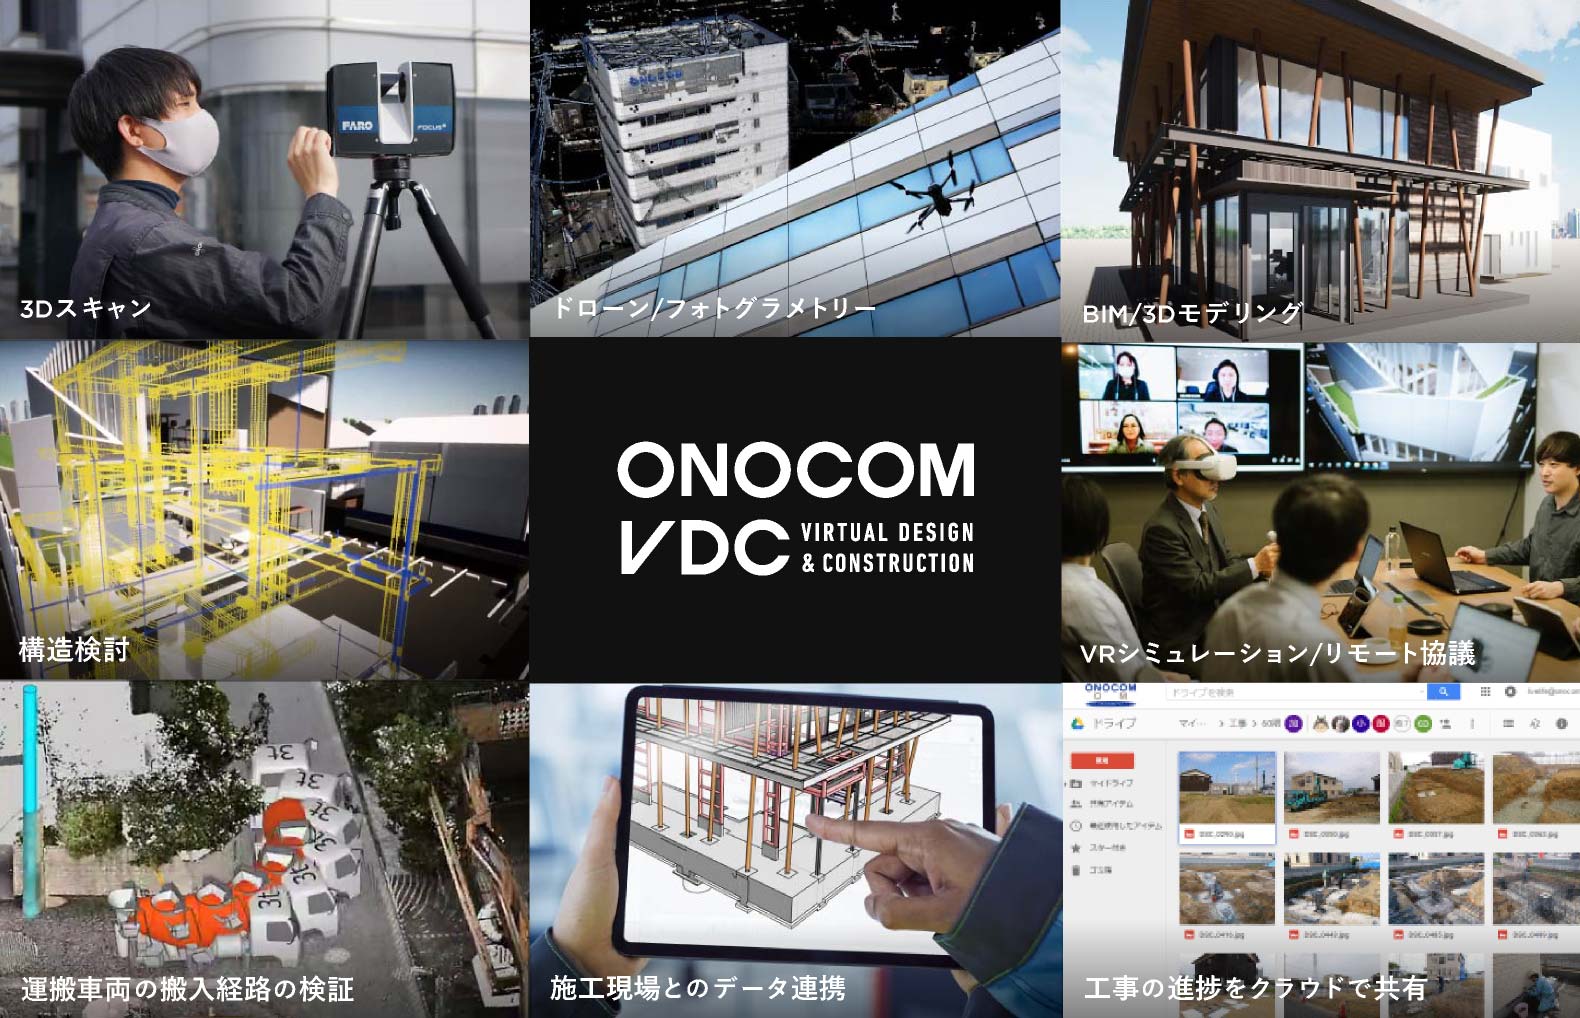 オノコムのデジタル建築を支えるVDCメソッドの内容